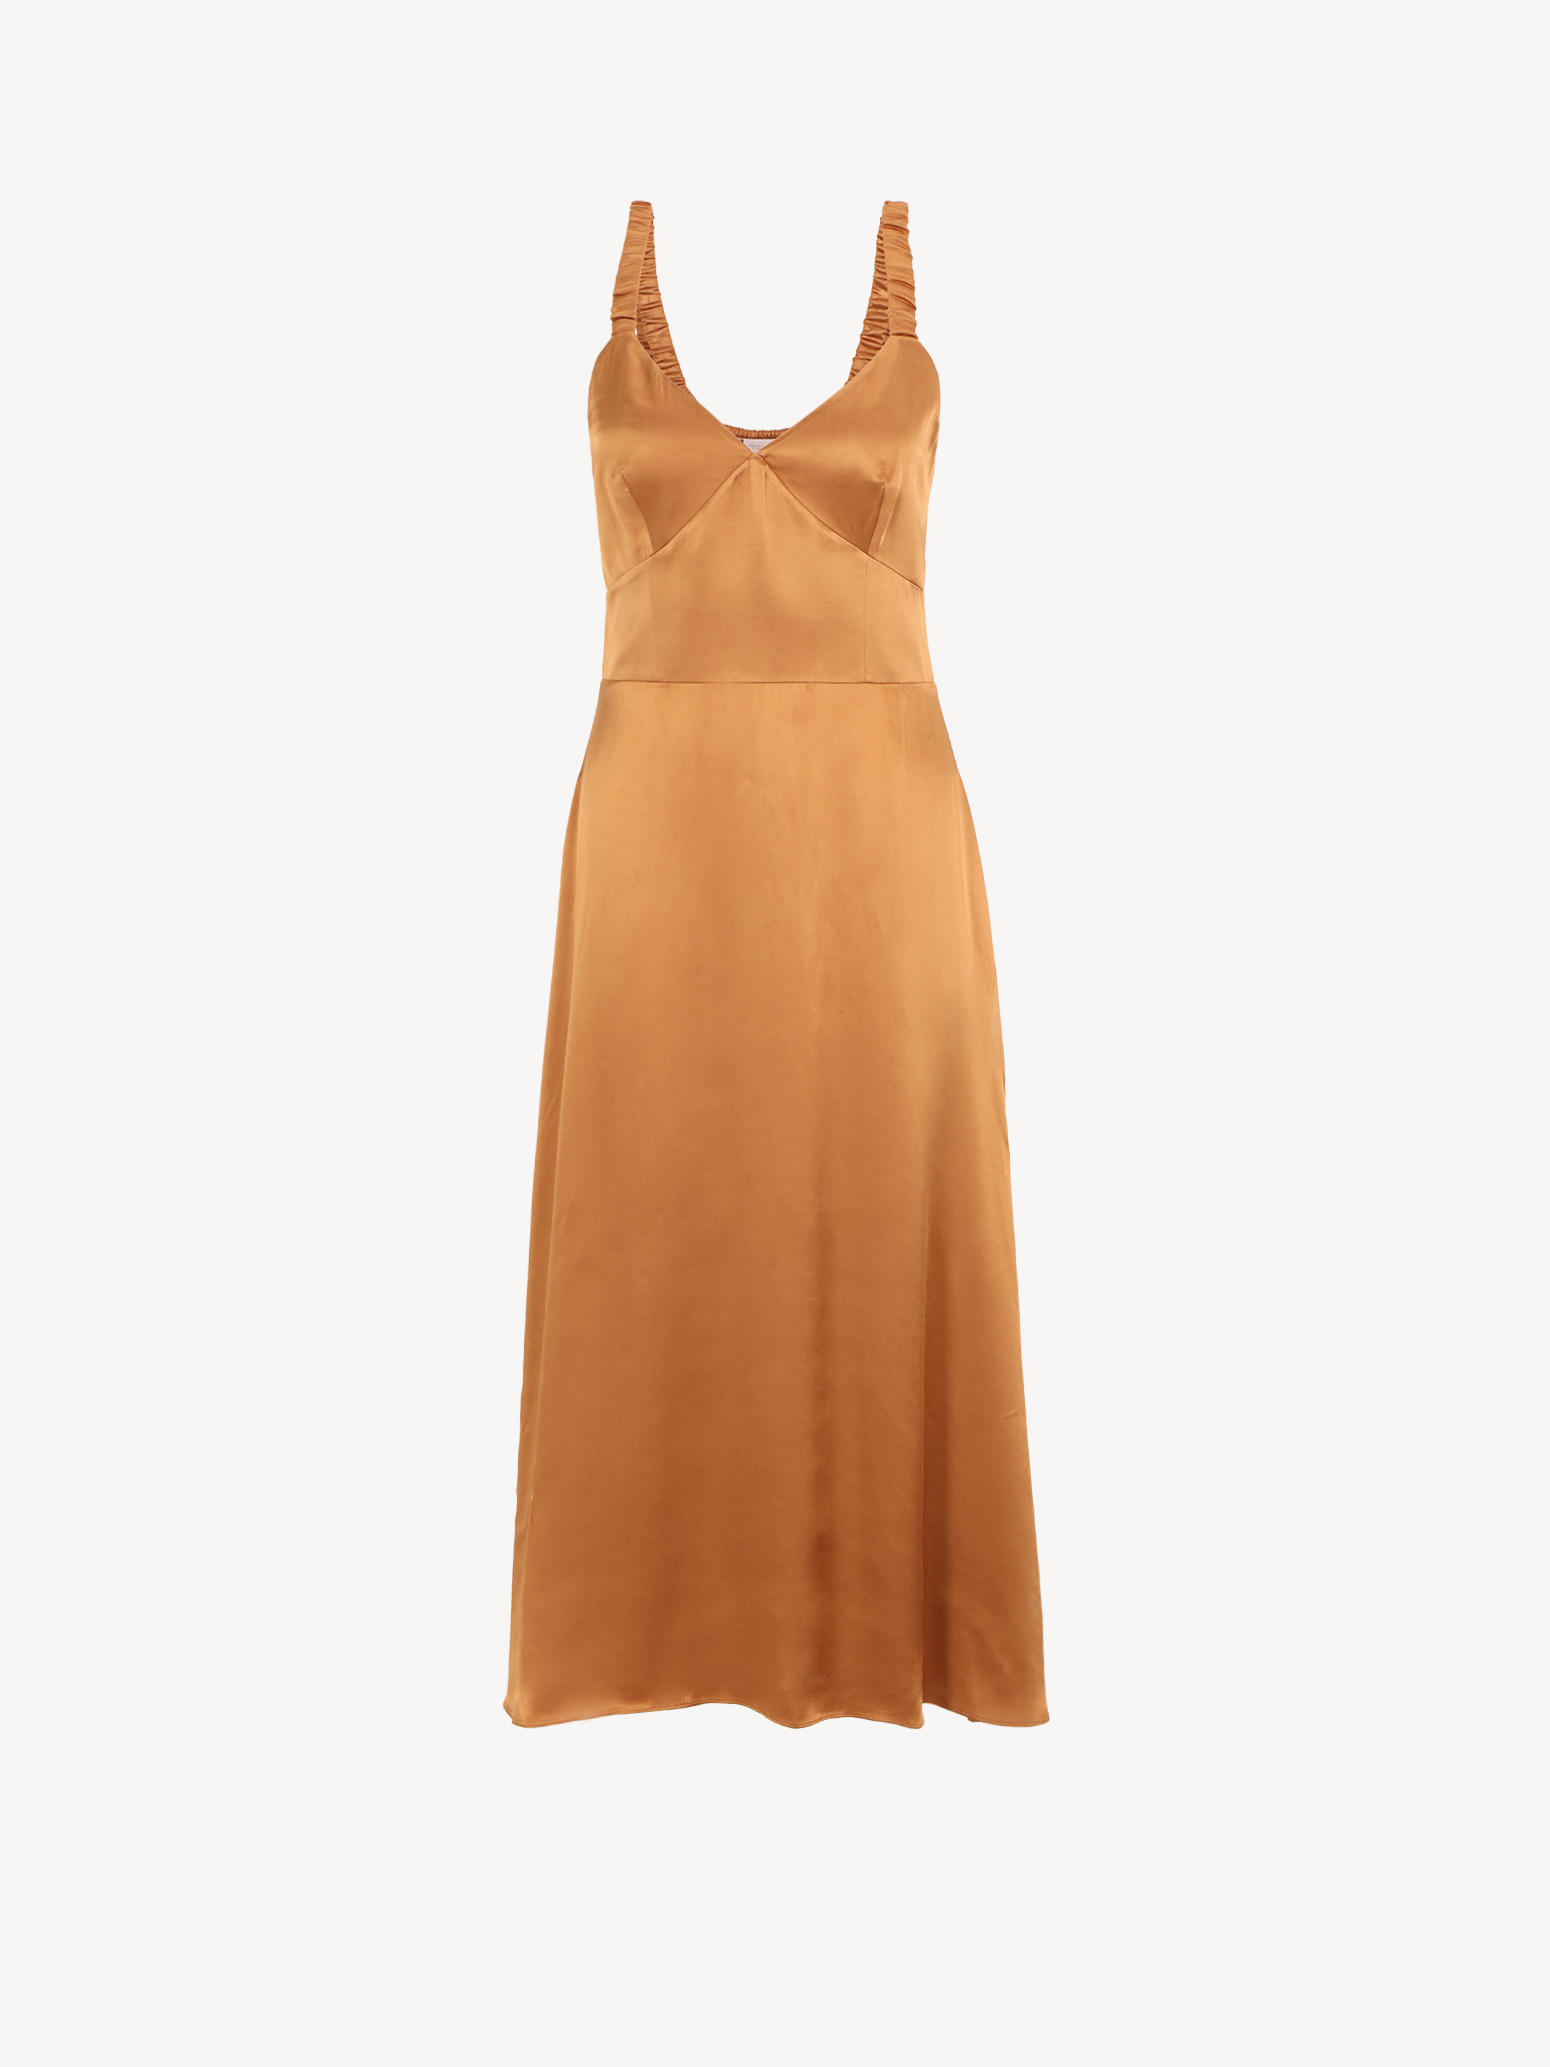 kaufen! Röcke online - Tamaris TAW0049-70023: & braun Kleider Kleid